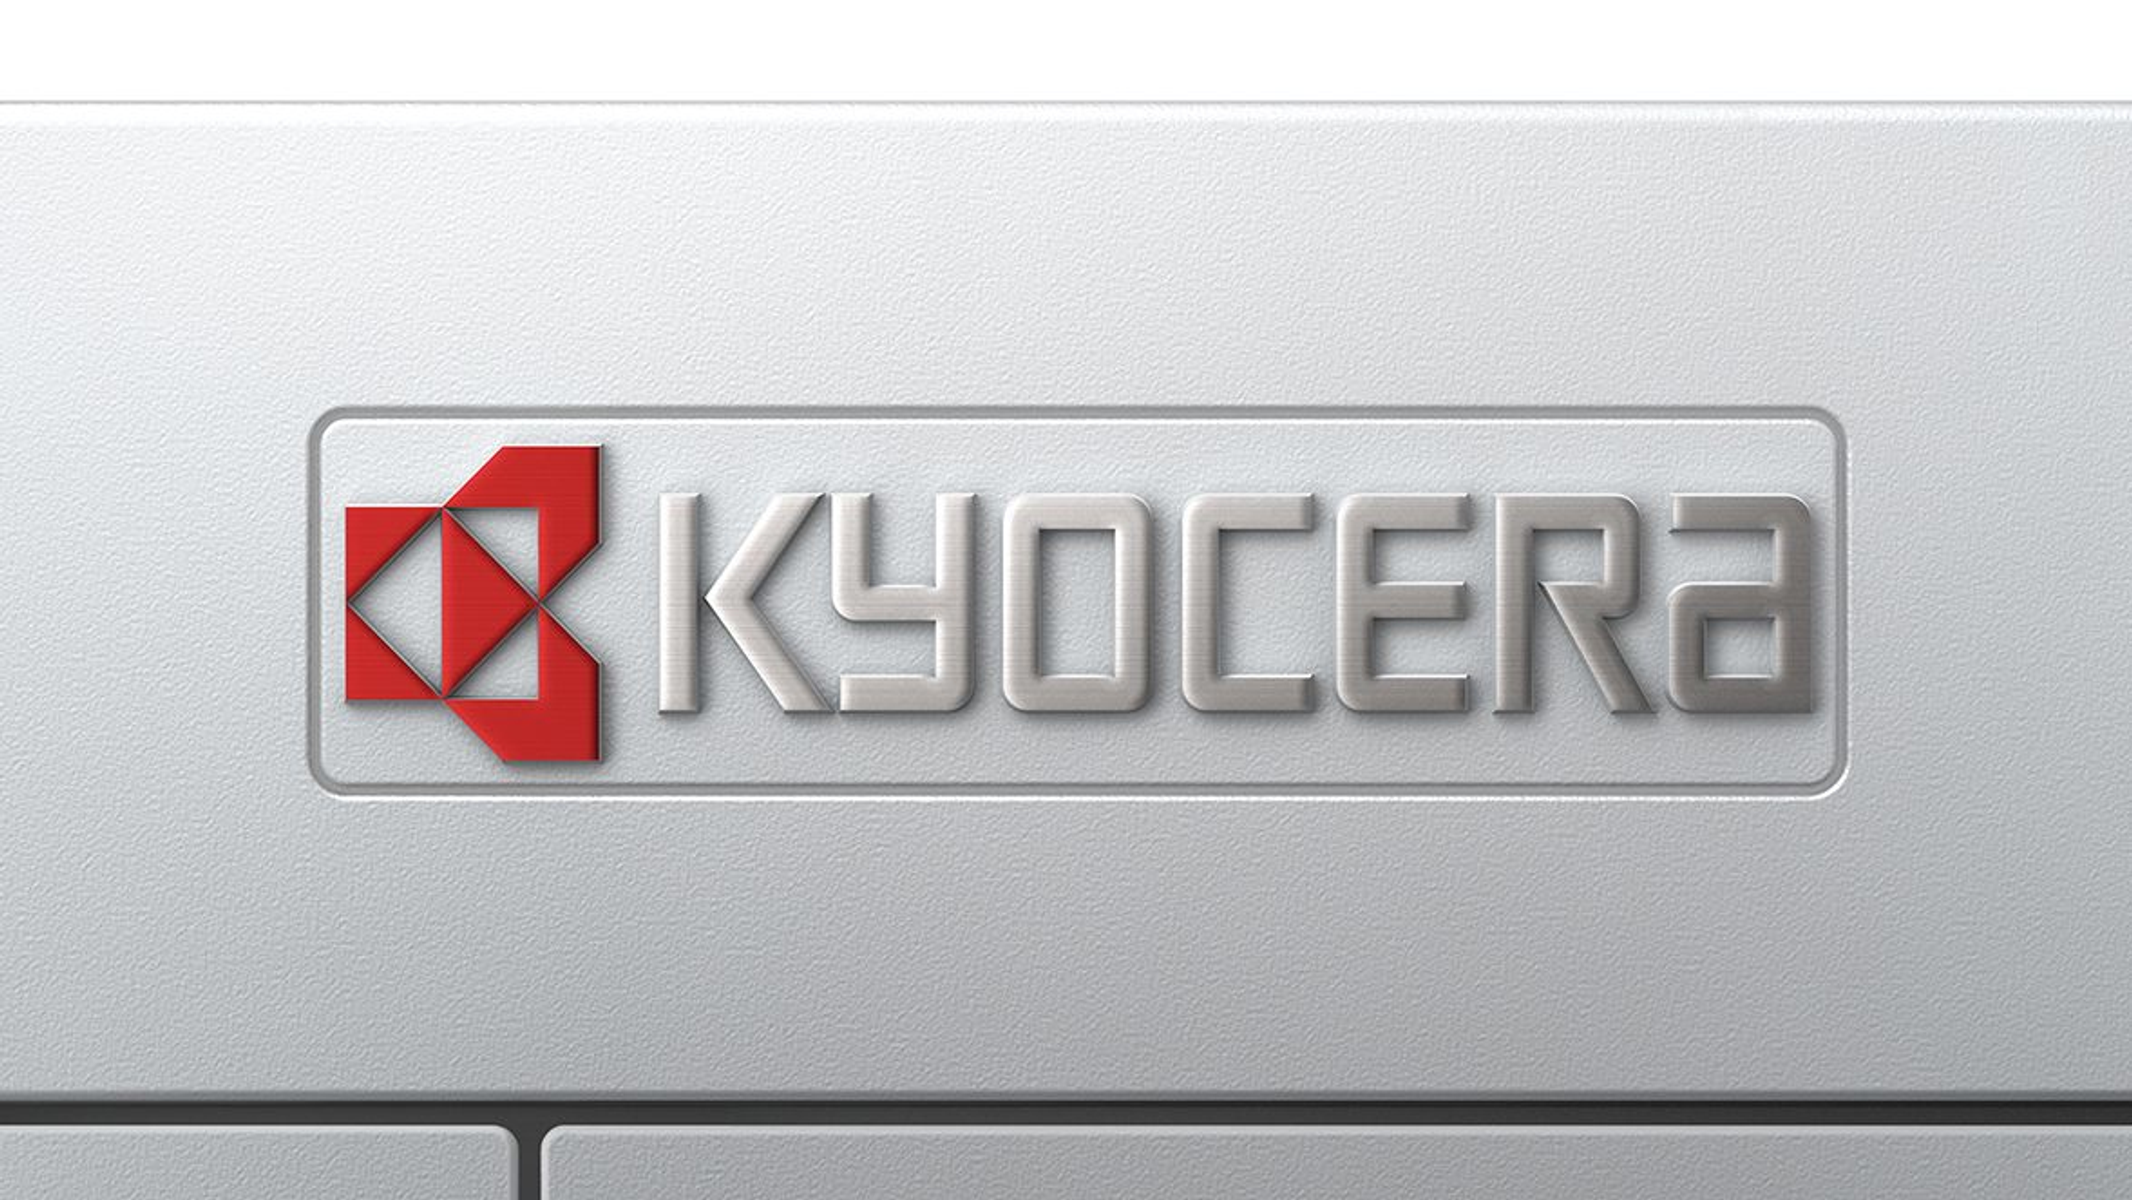 KYOCERA 1102TT3NL0 Laserdruck Netzwerkfähig Drucker